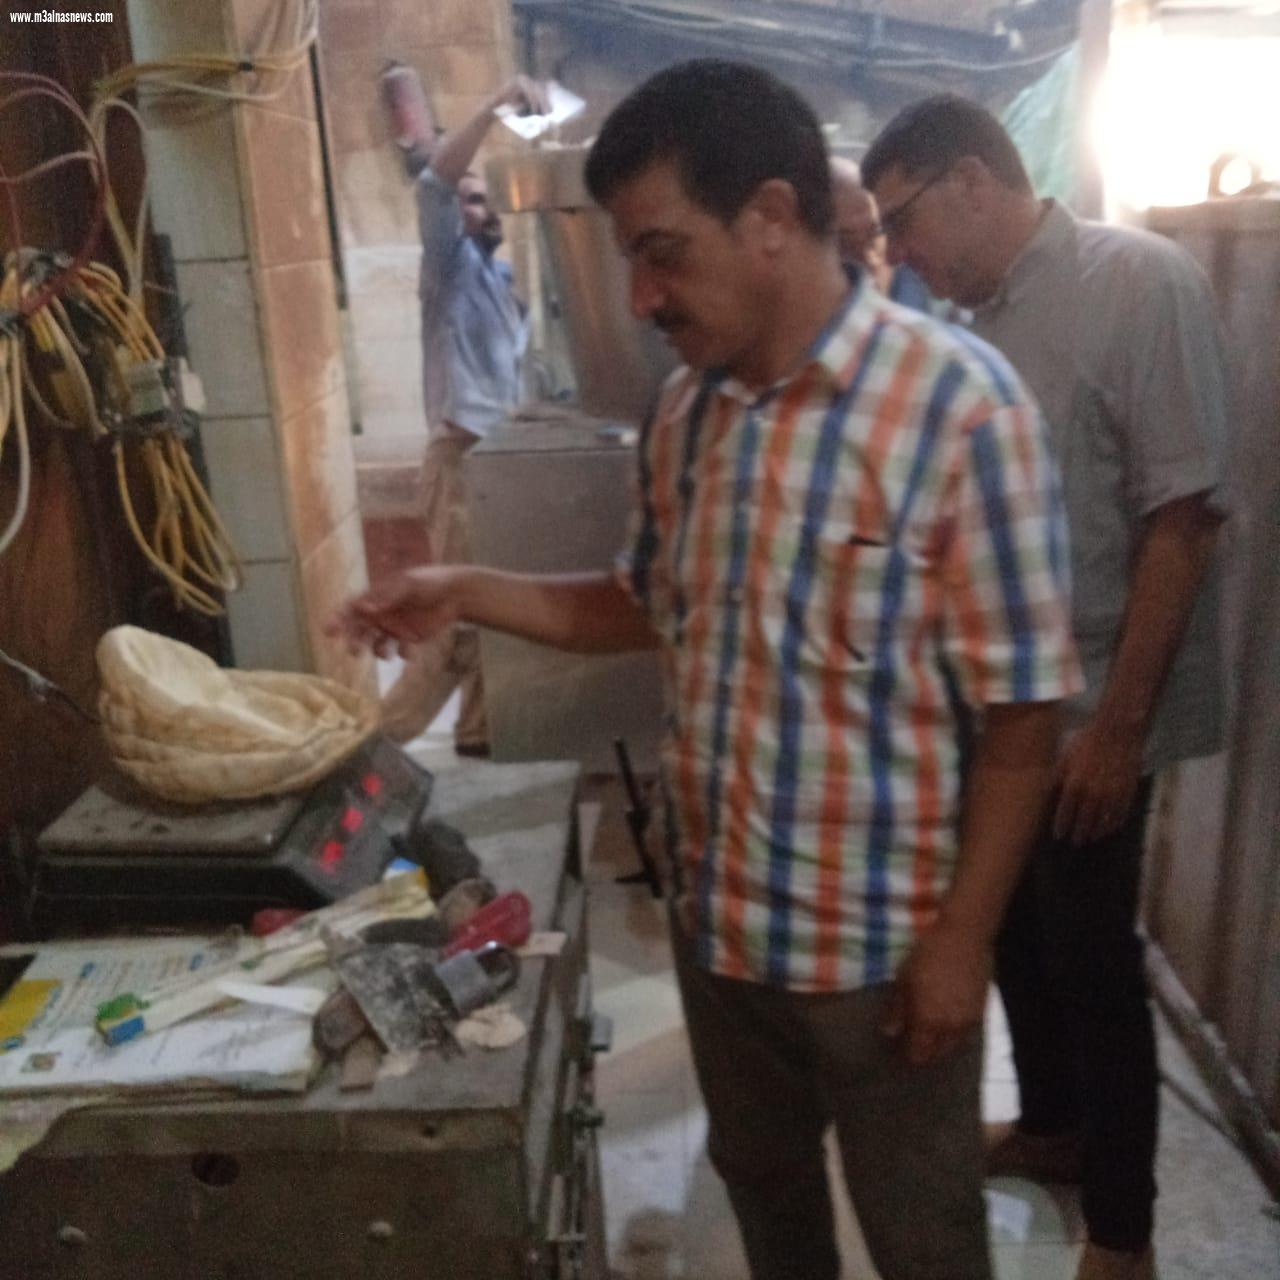 تموين كفر الشيخ ضبط طن و700 كيلو دقيق مدعم داخل مخبز بلدي في بيلا